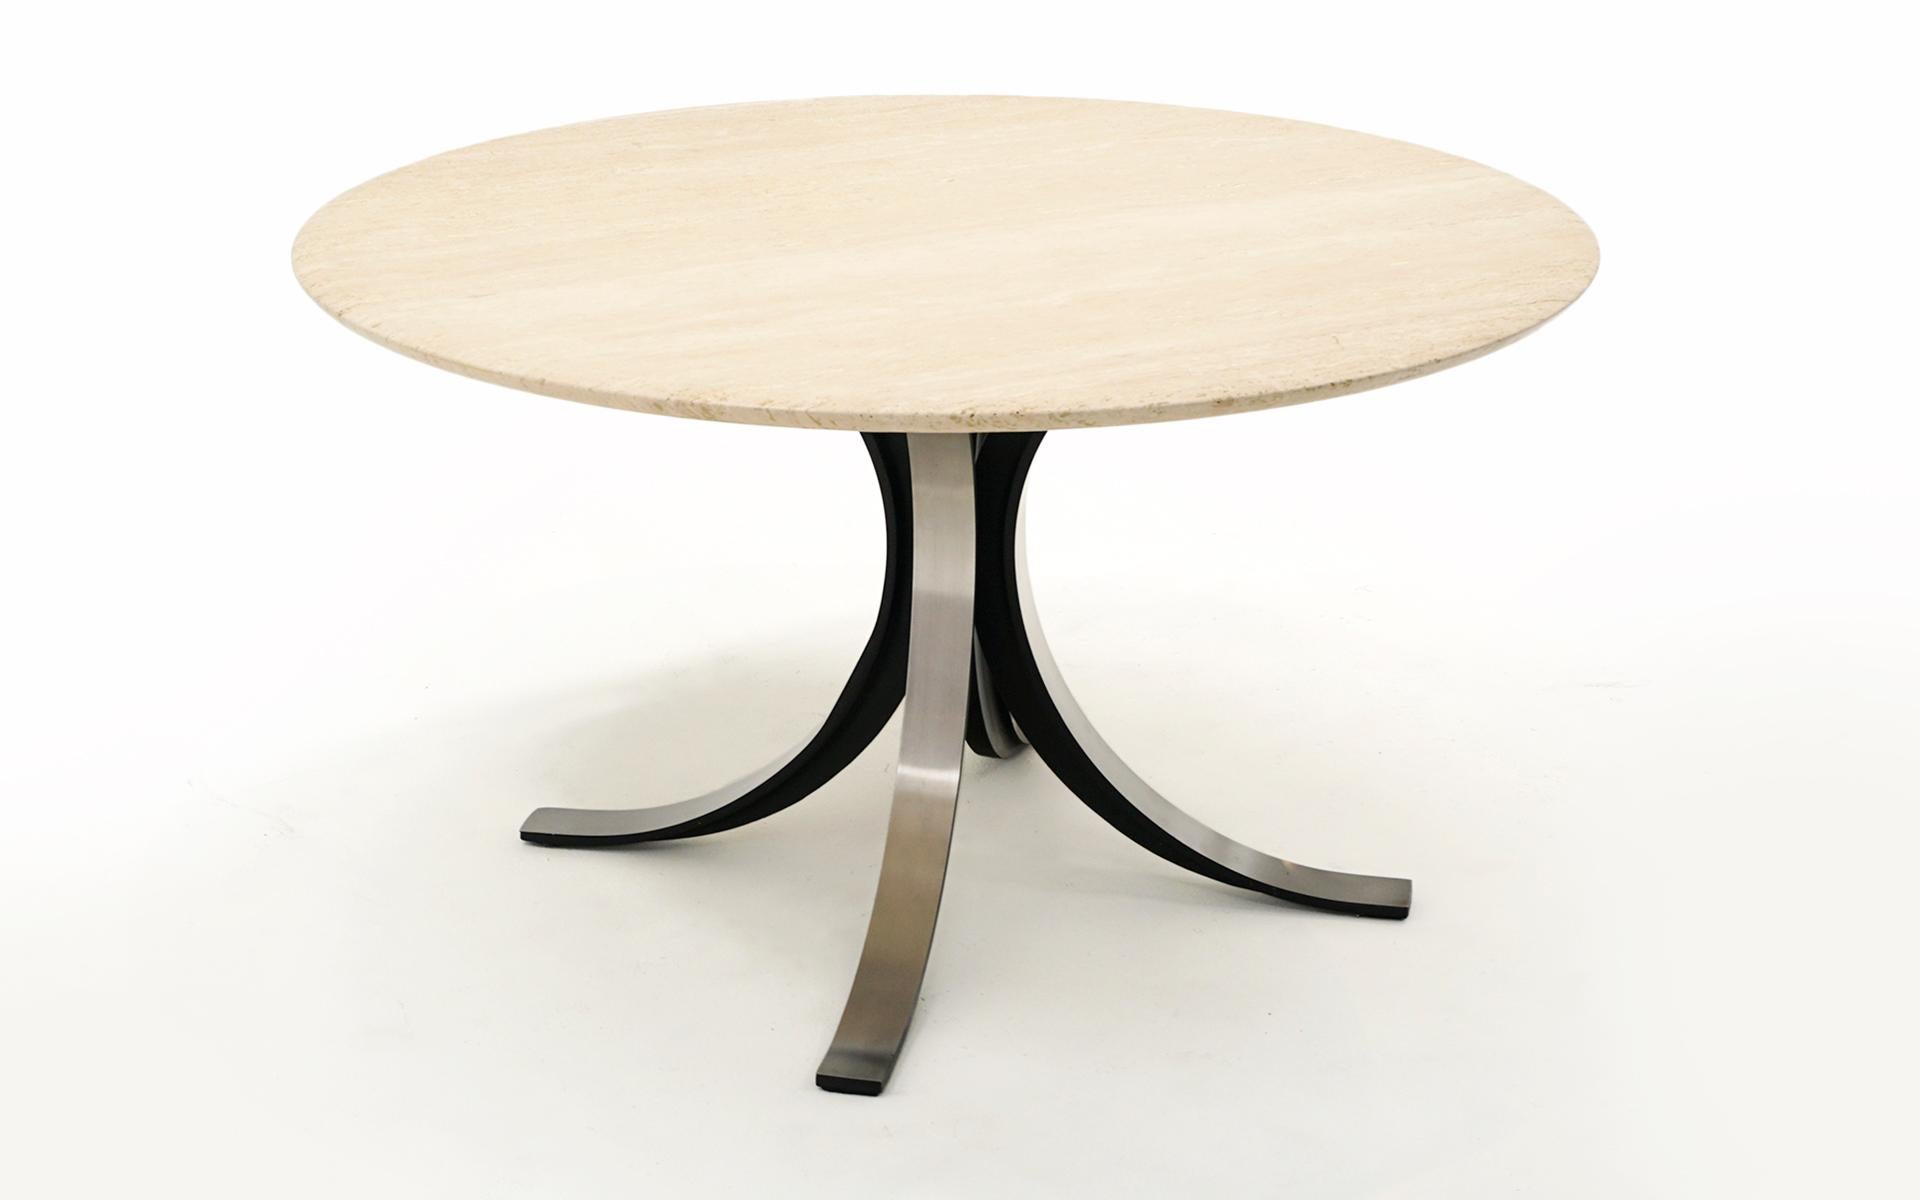 Osvaldo Borsani Esstisch oder Mitteltisch oder Spieltisch mit der originalen ein Zoll dicken Travertinplatte mit leicht verjüngtem Rand.  Schwarzes Stahlgestell mit Aluminiumplatten.  Auf dem Travertin befindet sich ein Wasserring, der nur bei